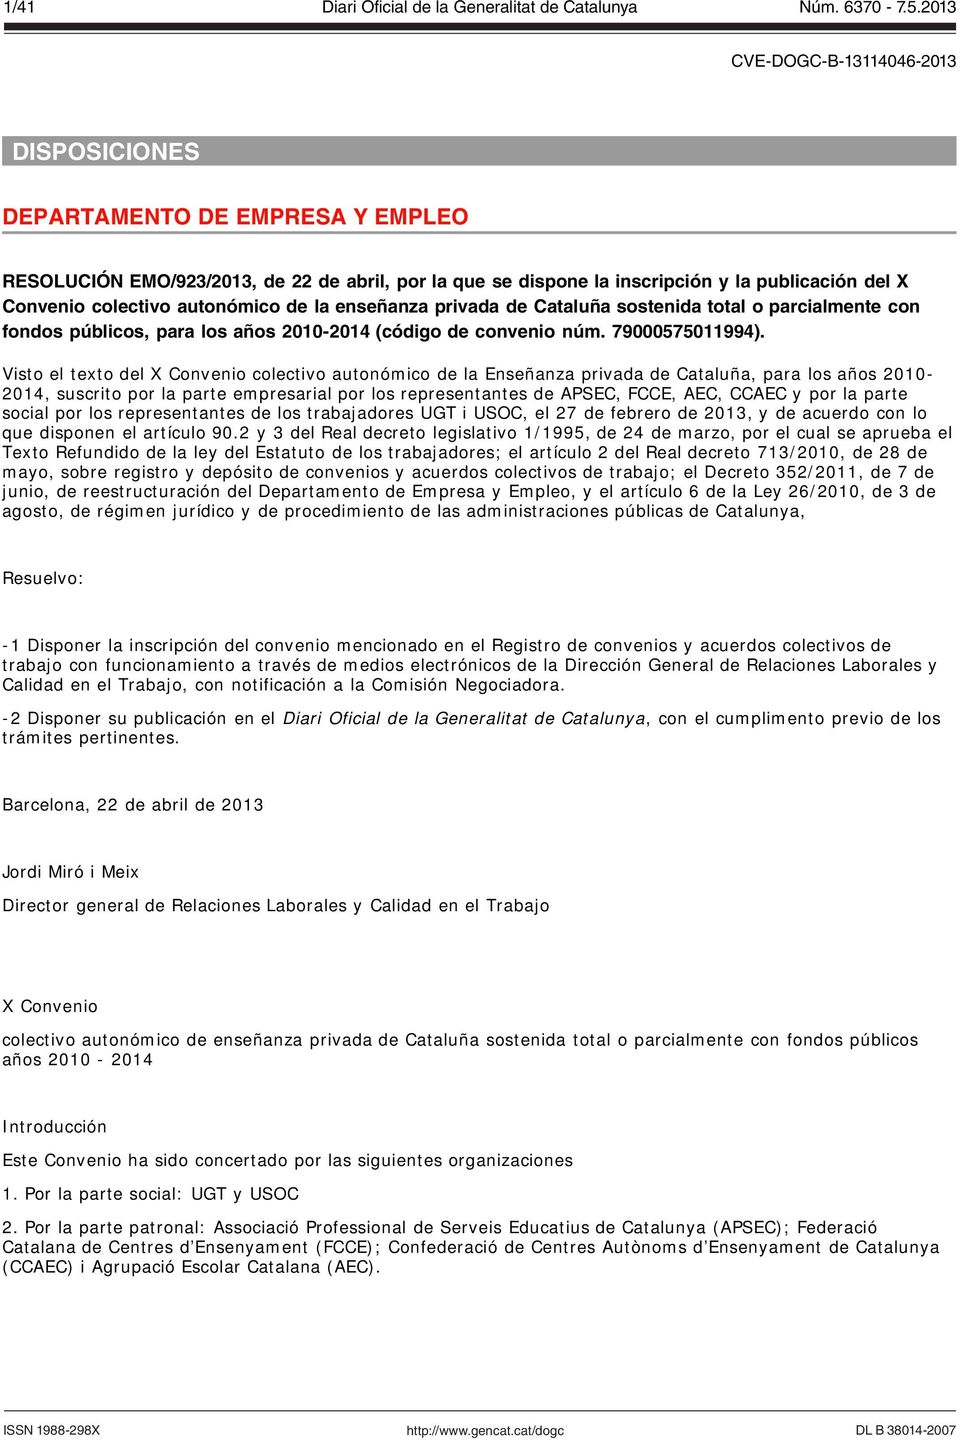 Visto el texto del X Convenio colectivo autonómico de la Enseñanza privada de Cataluña, para los años 2010-2014, suscrito por la parte empresarial por los representantes de APSEC, FCCE, AEC, CCAEC y